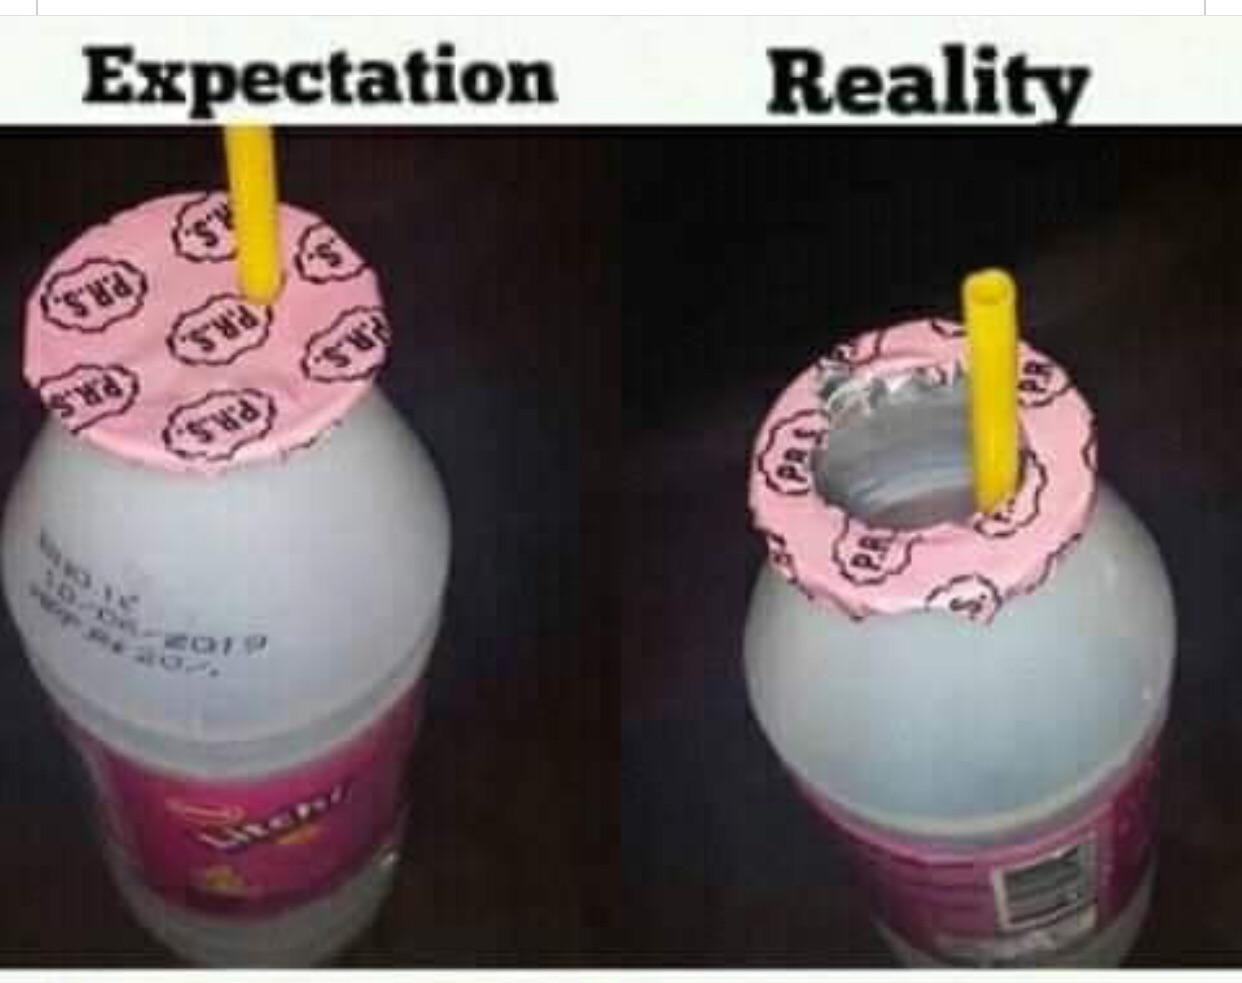 Expectation Reality